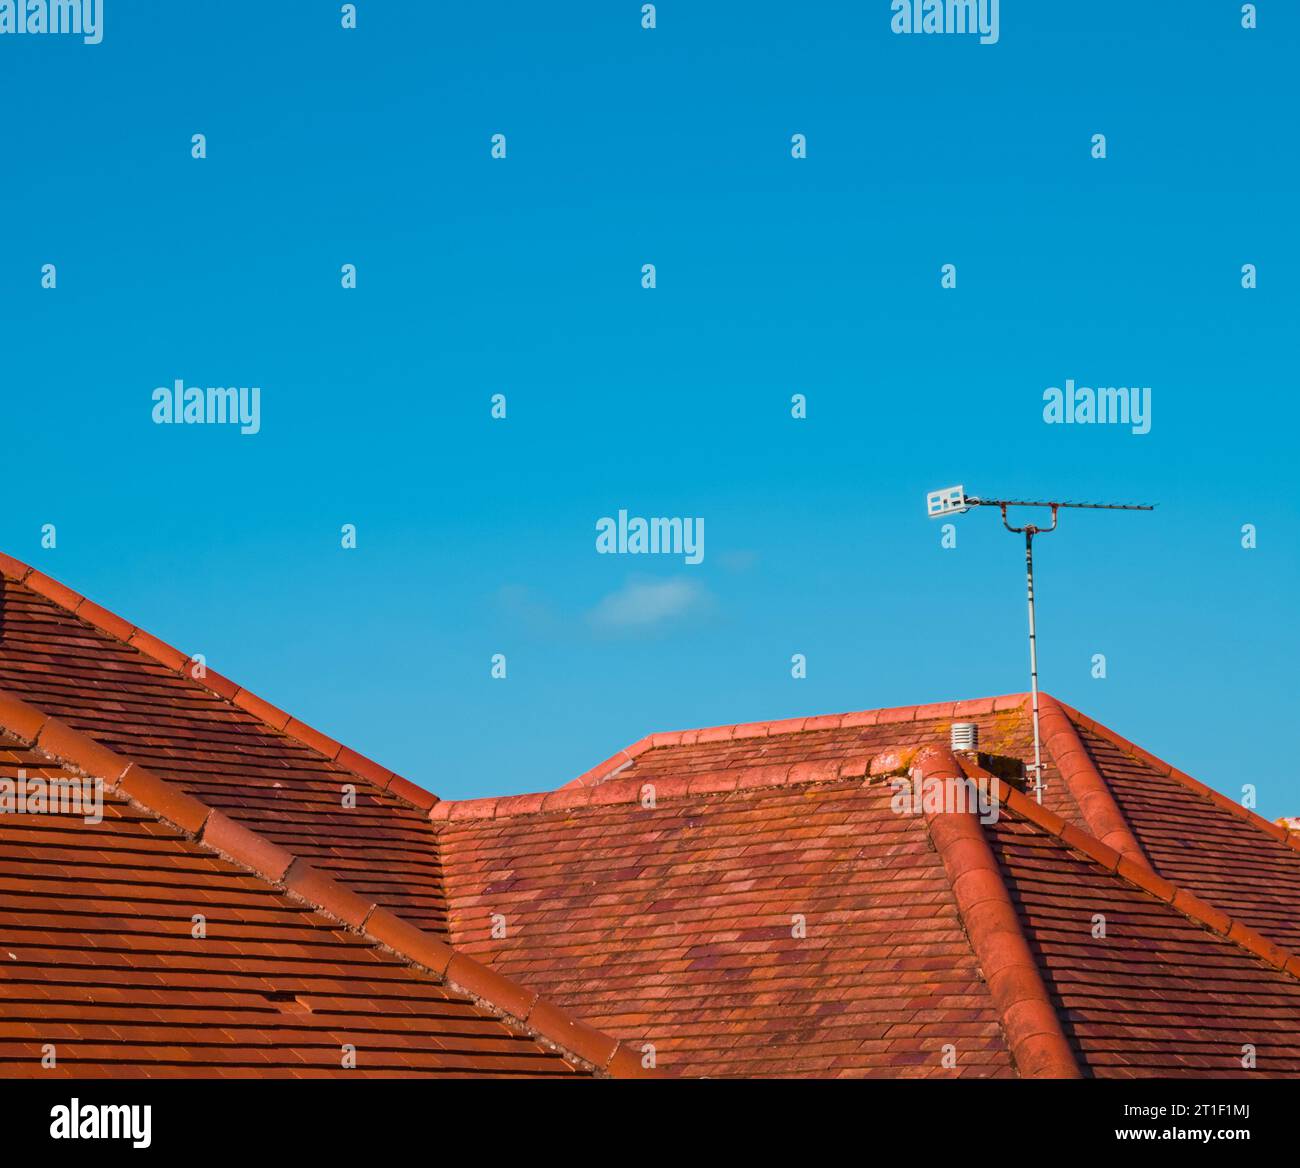 Tetti piastrellati in terracotta con antenna televisiva collocata contro Un cielo blu che imita le montagne in Un paesaggio, Regno Unito Foto Stock